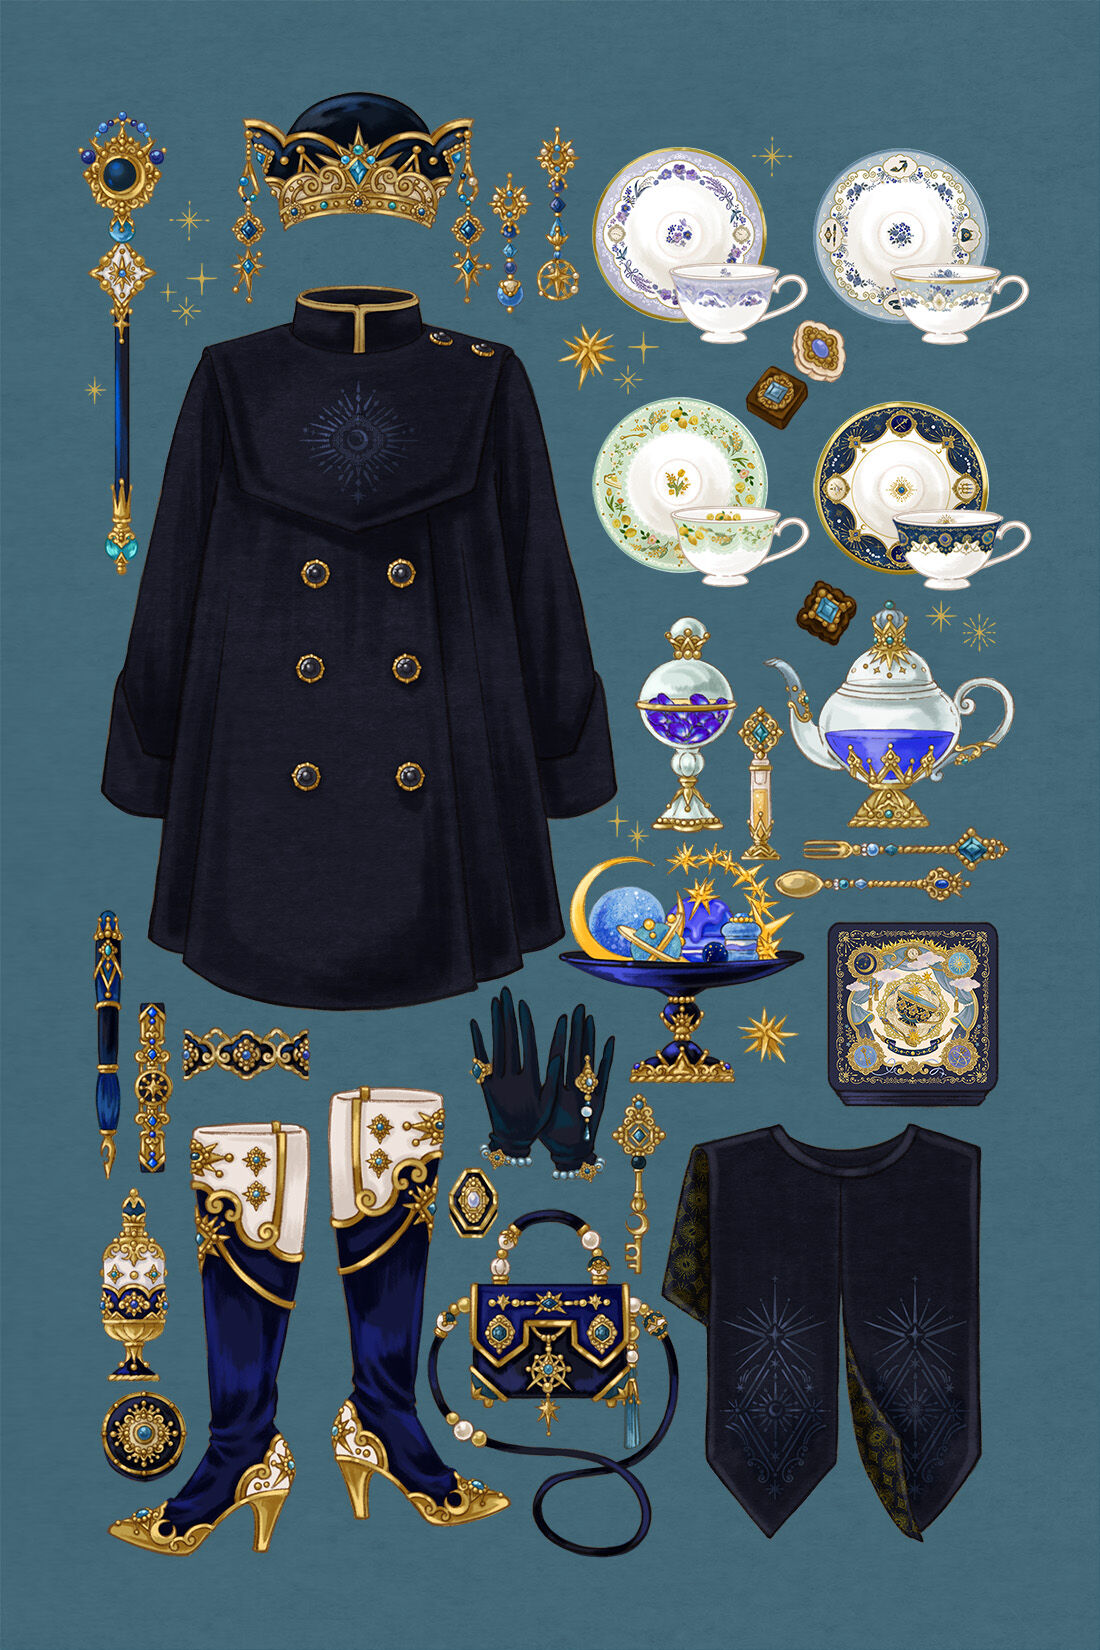 魔法部|魔法部×fouatons　日常を守りきる　日と月の紋章をまとう2-WAYコート〈ミッドナイトブラック〉|シリーズ　「魔法少女は日常を守り切る」のアイテムです。※こちらのイラストカードが付属します。